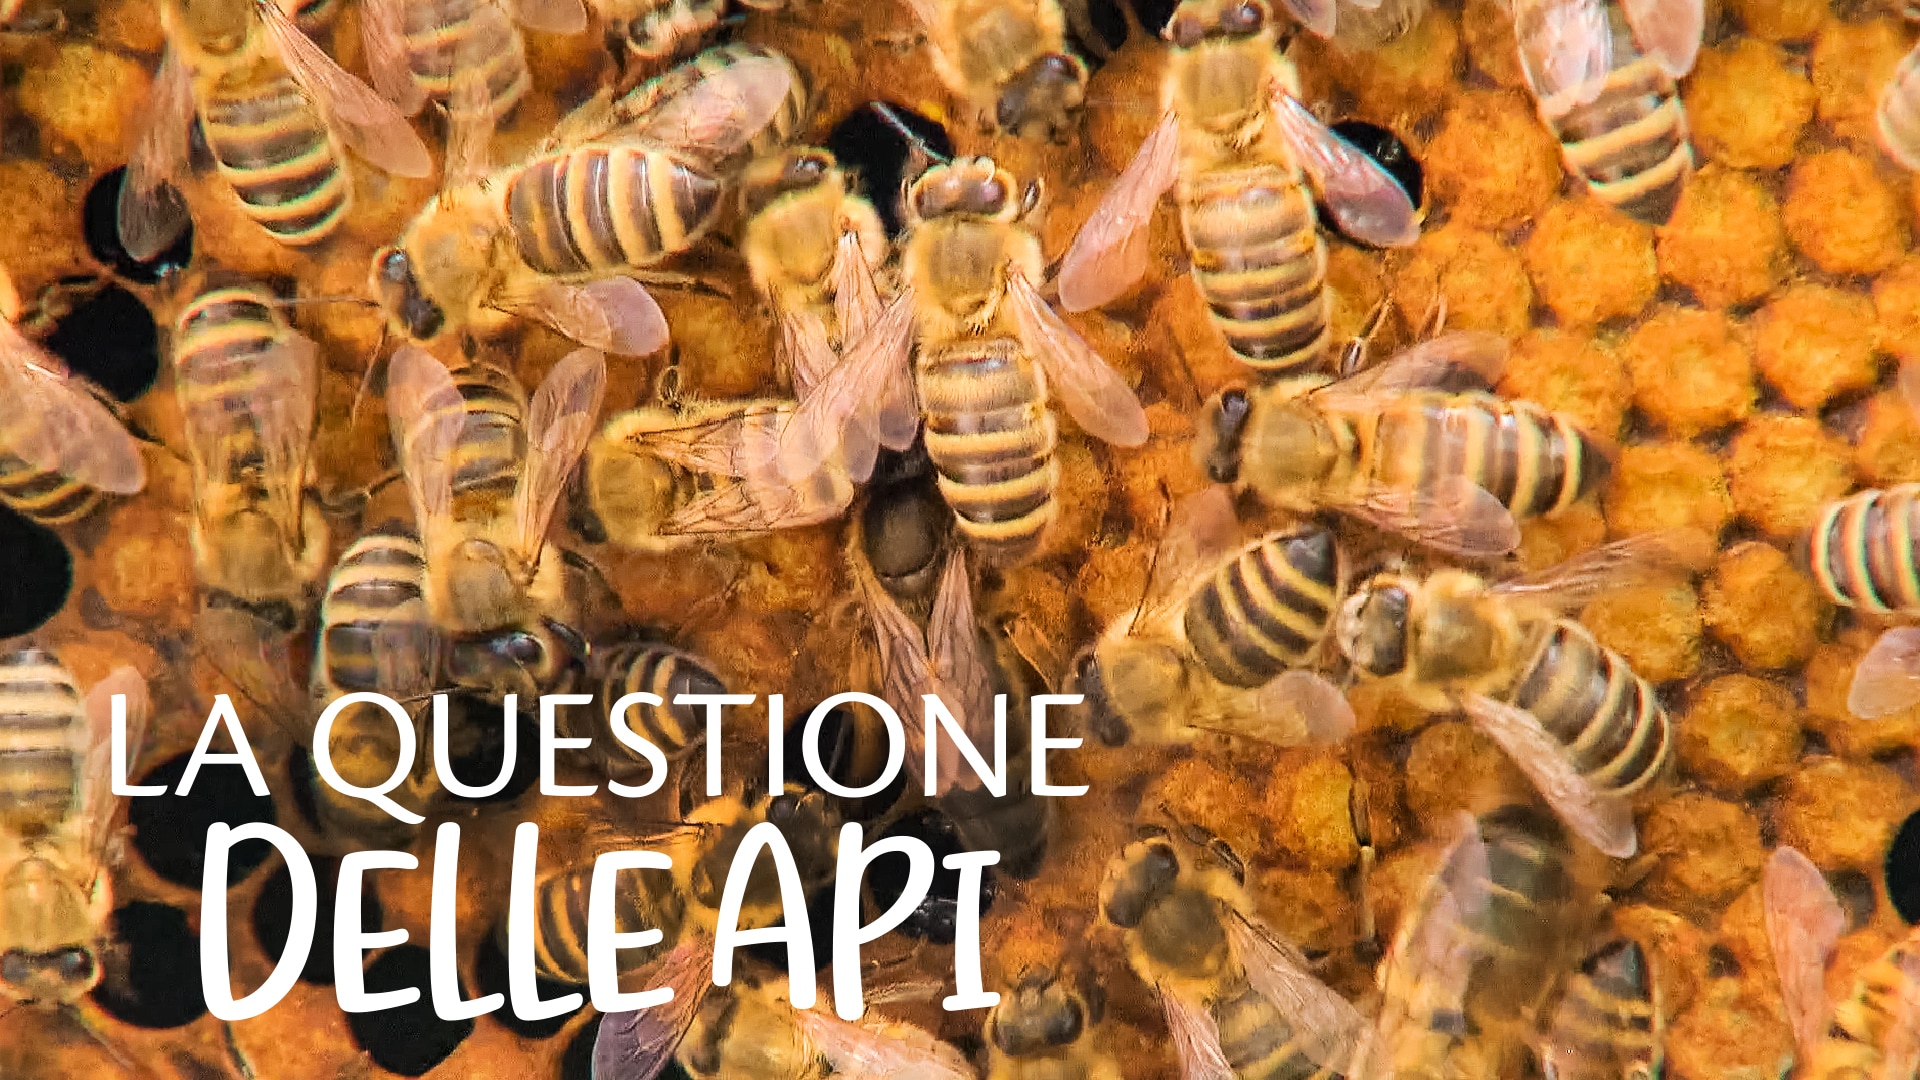 La questione delle api